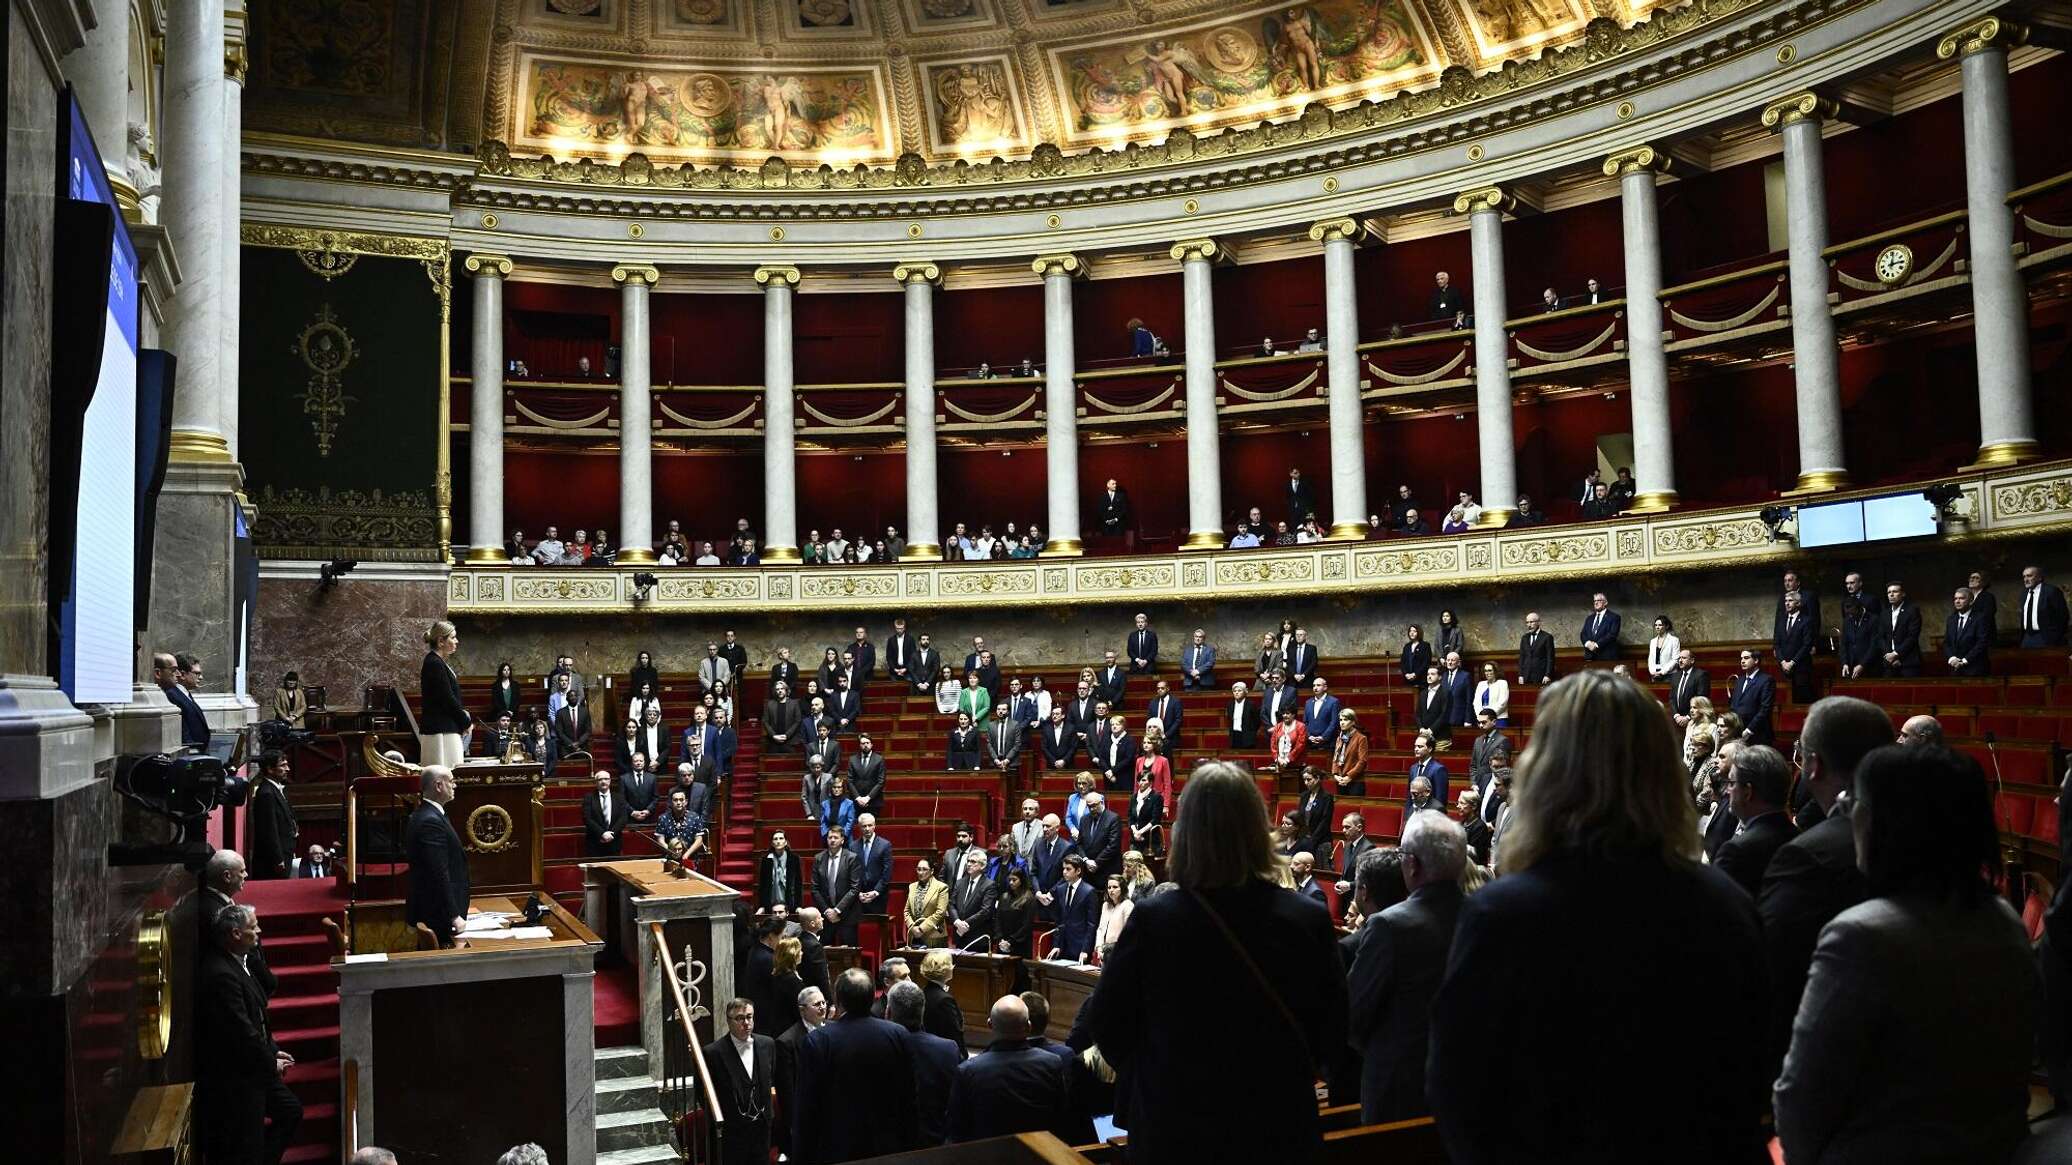 البرلمان الفرنسي يتبنى مشروع قرار بإدانة "القمع الدامي والقاتل" لجزائريين عام 1961